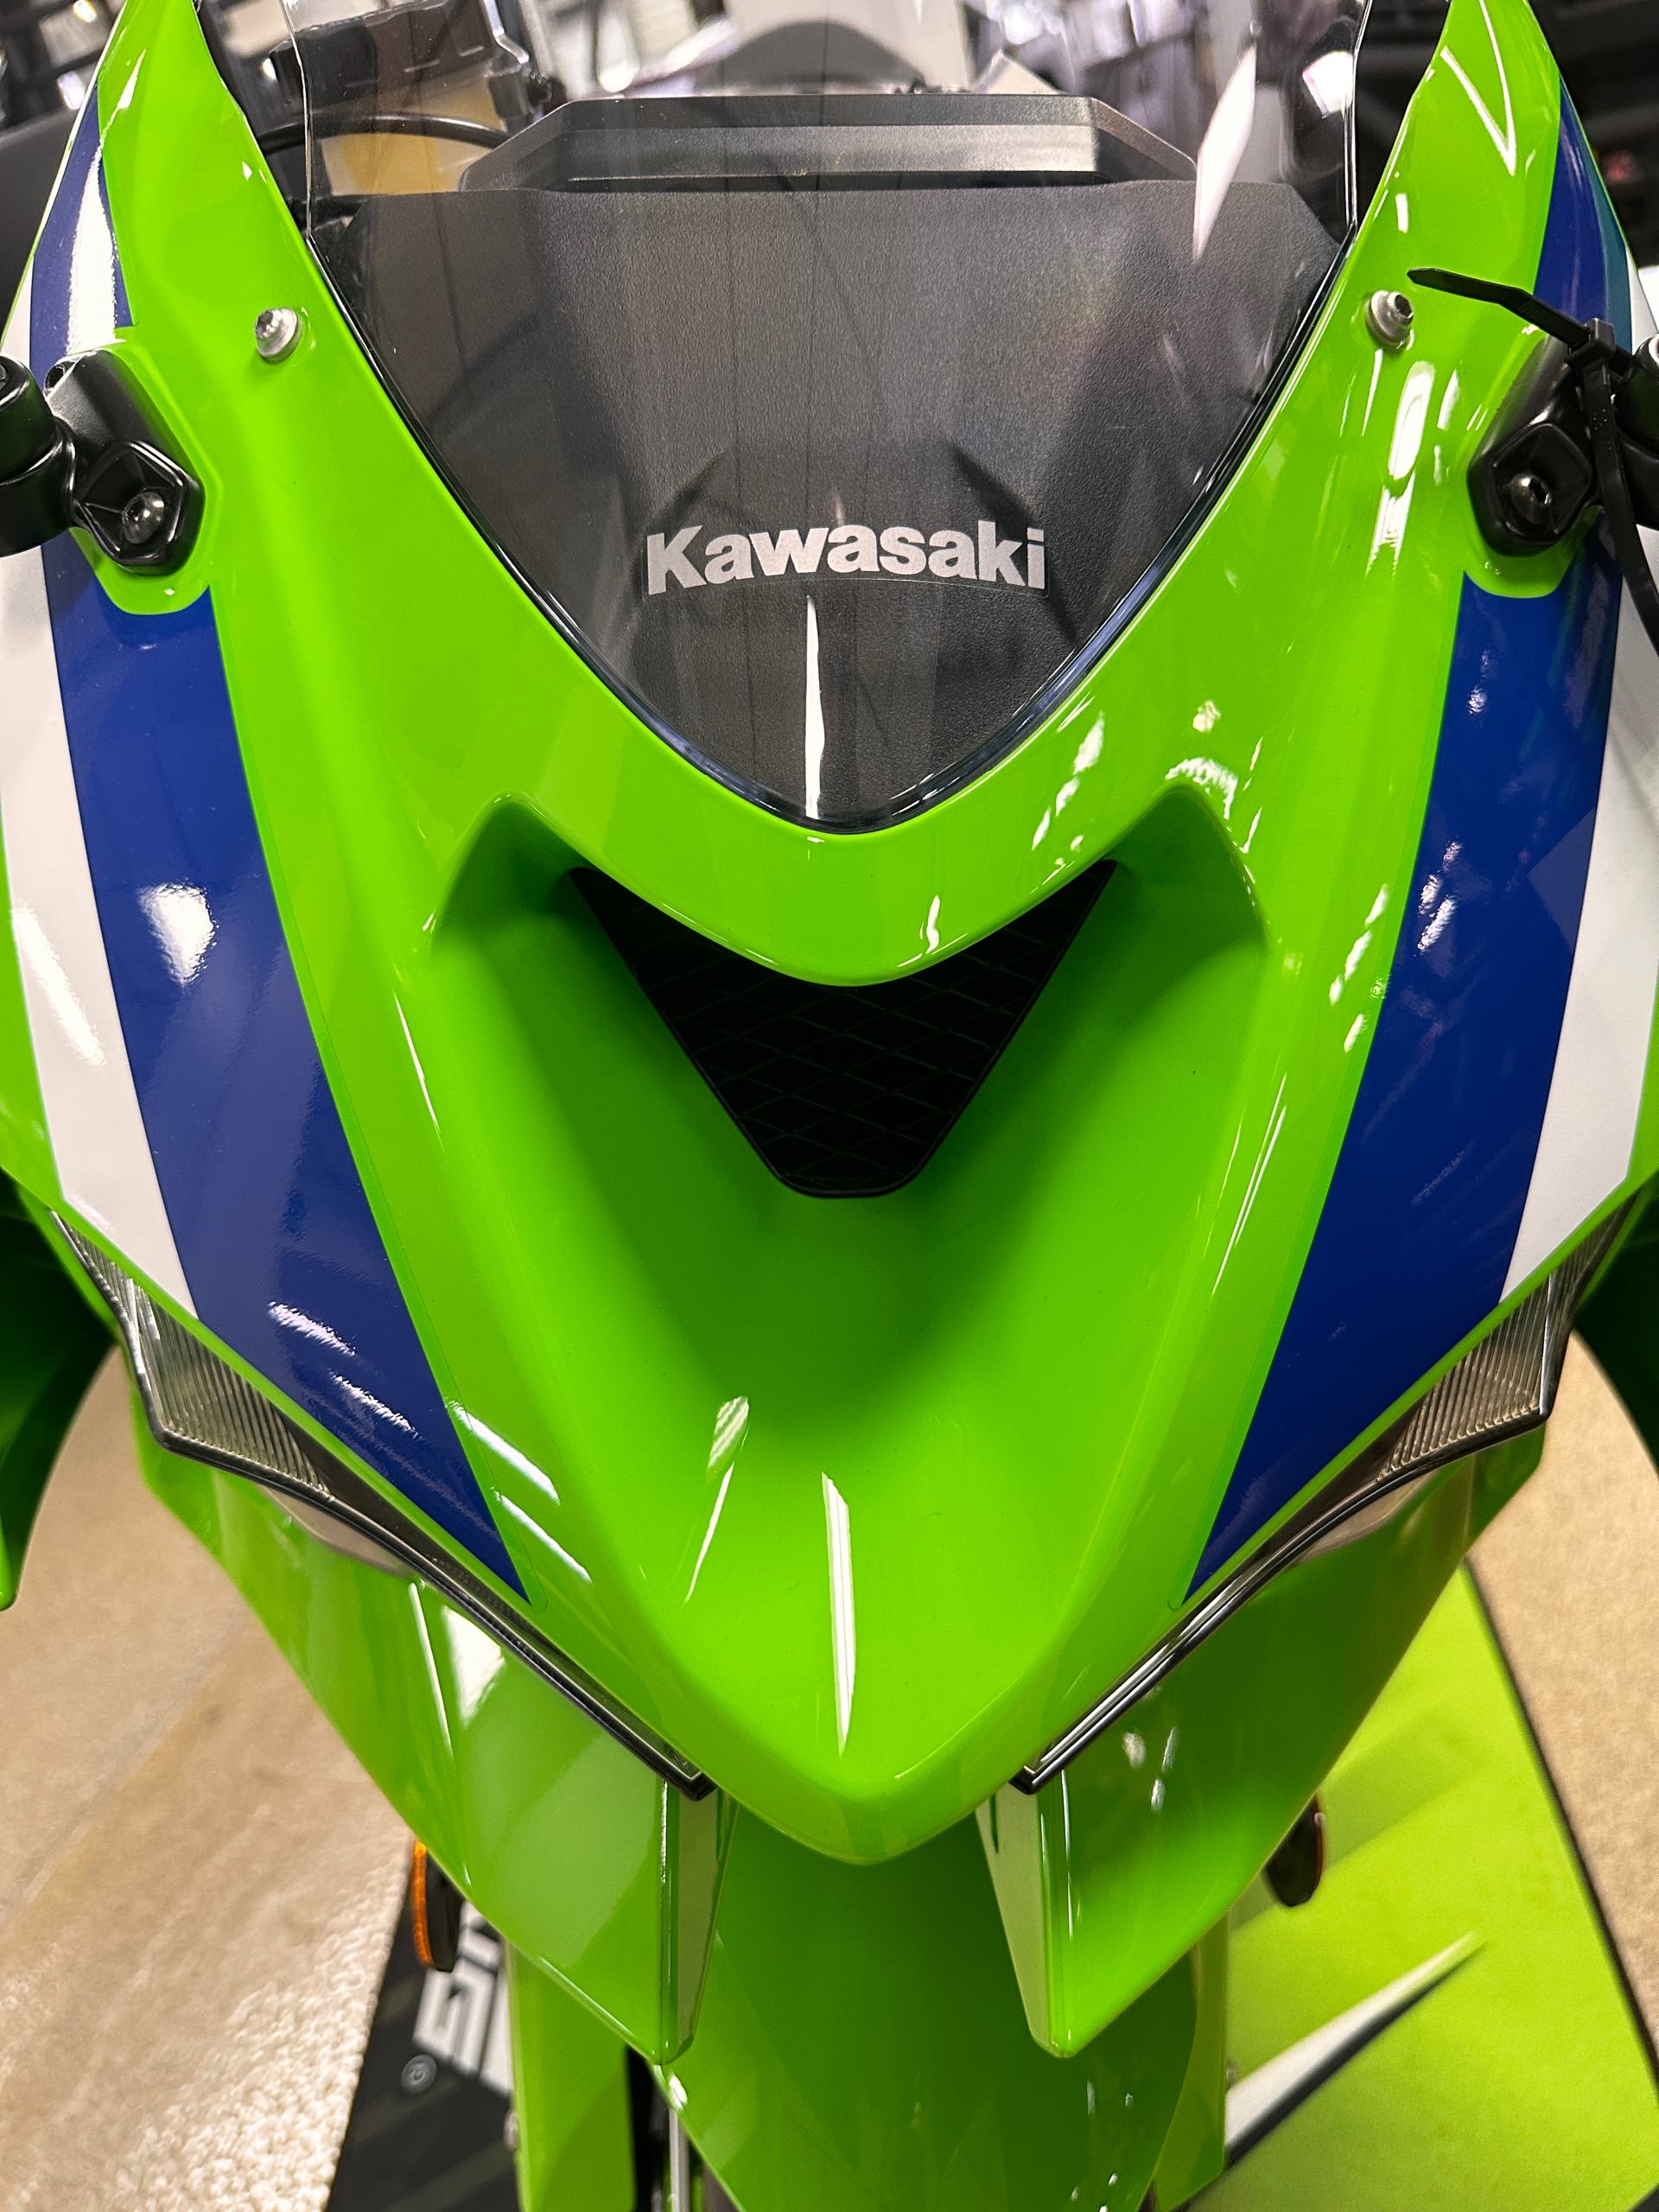 2024 Kawasaki Ninja ZX-6R 40th Anniversary Edition ABS at Big River Motorsports